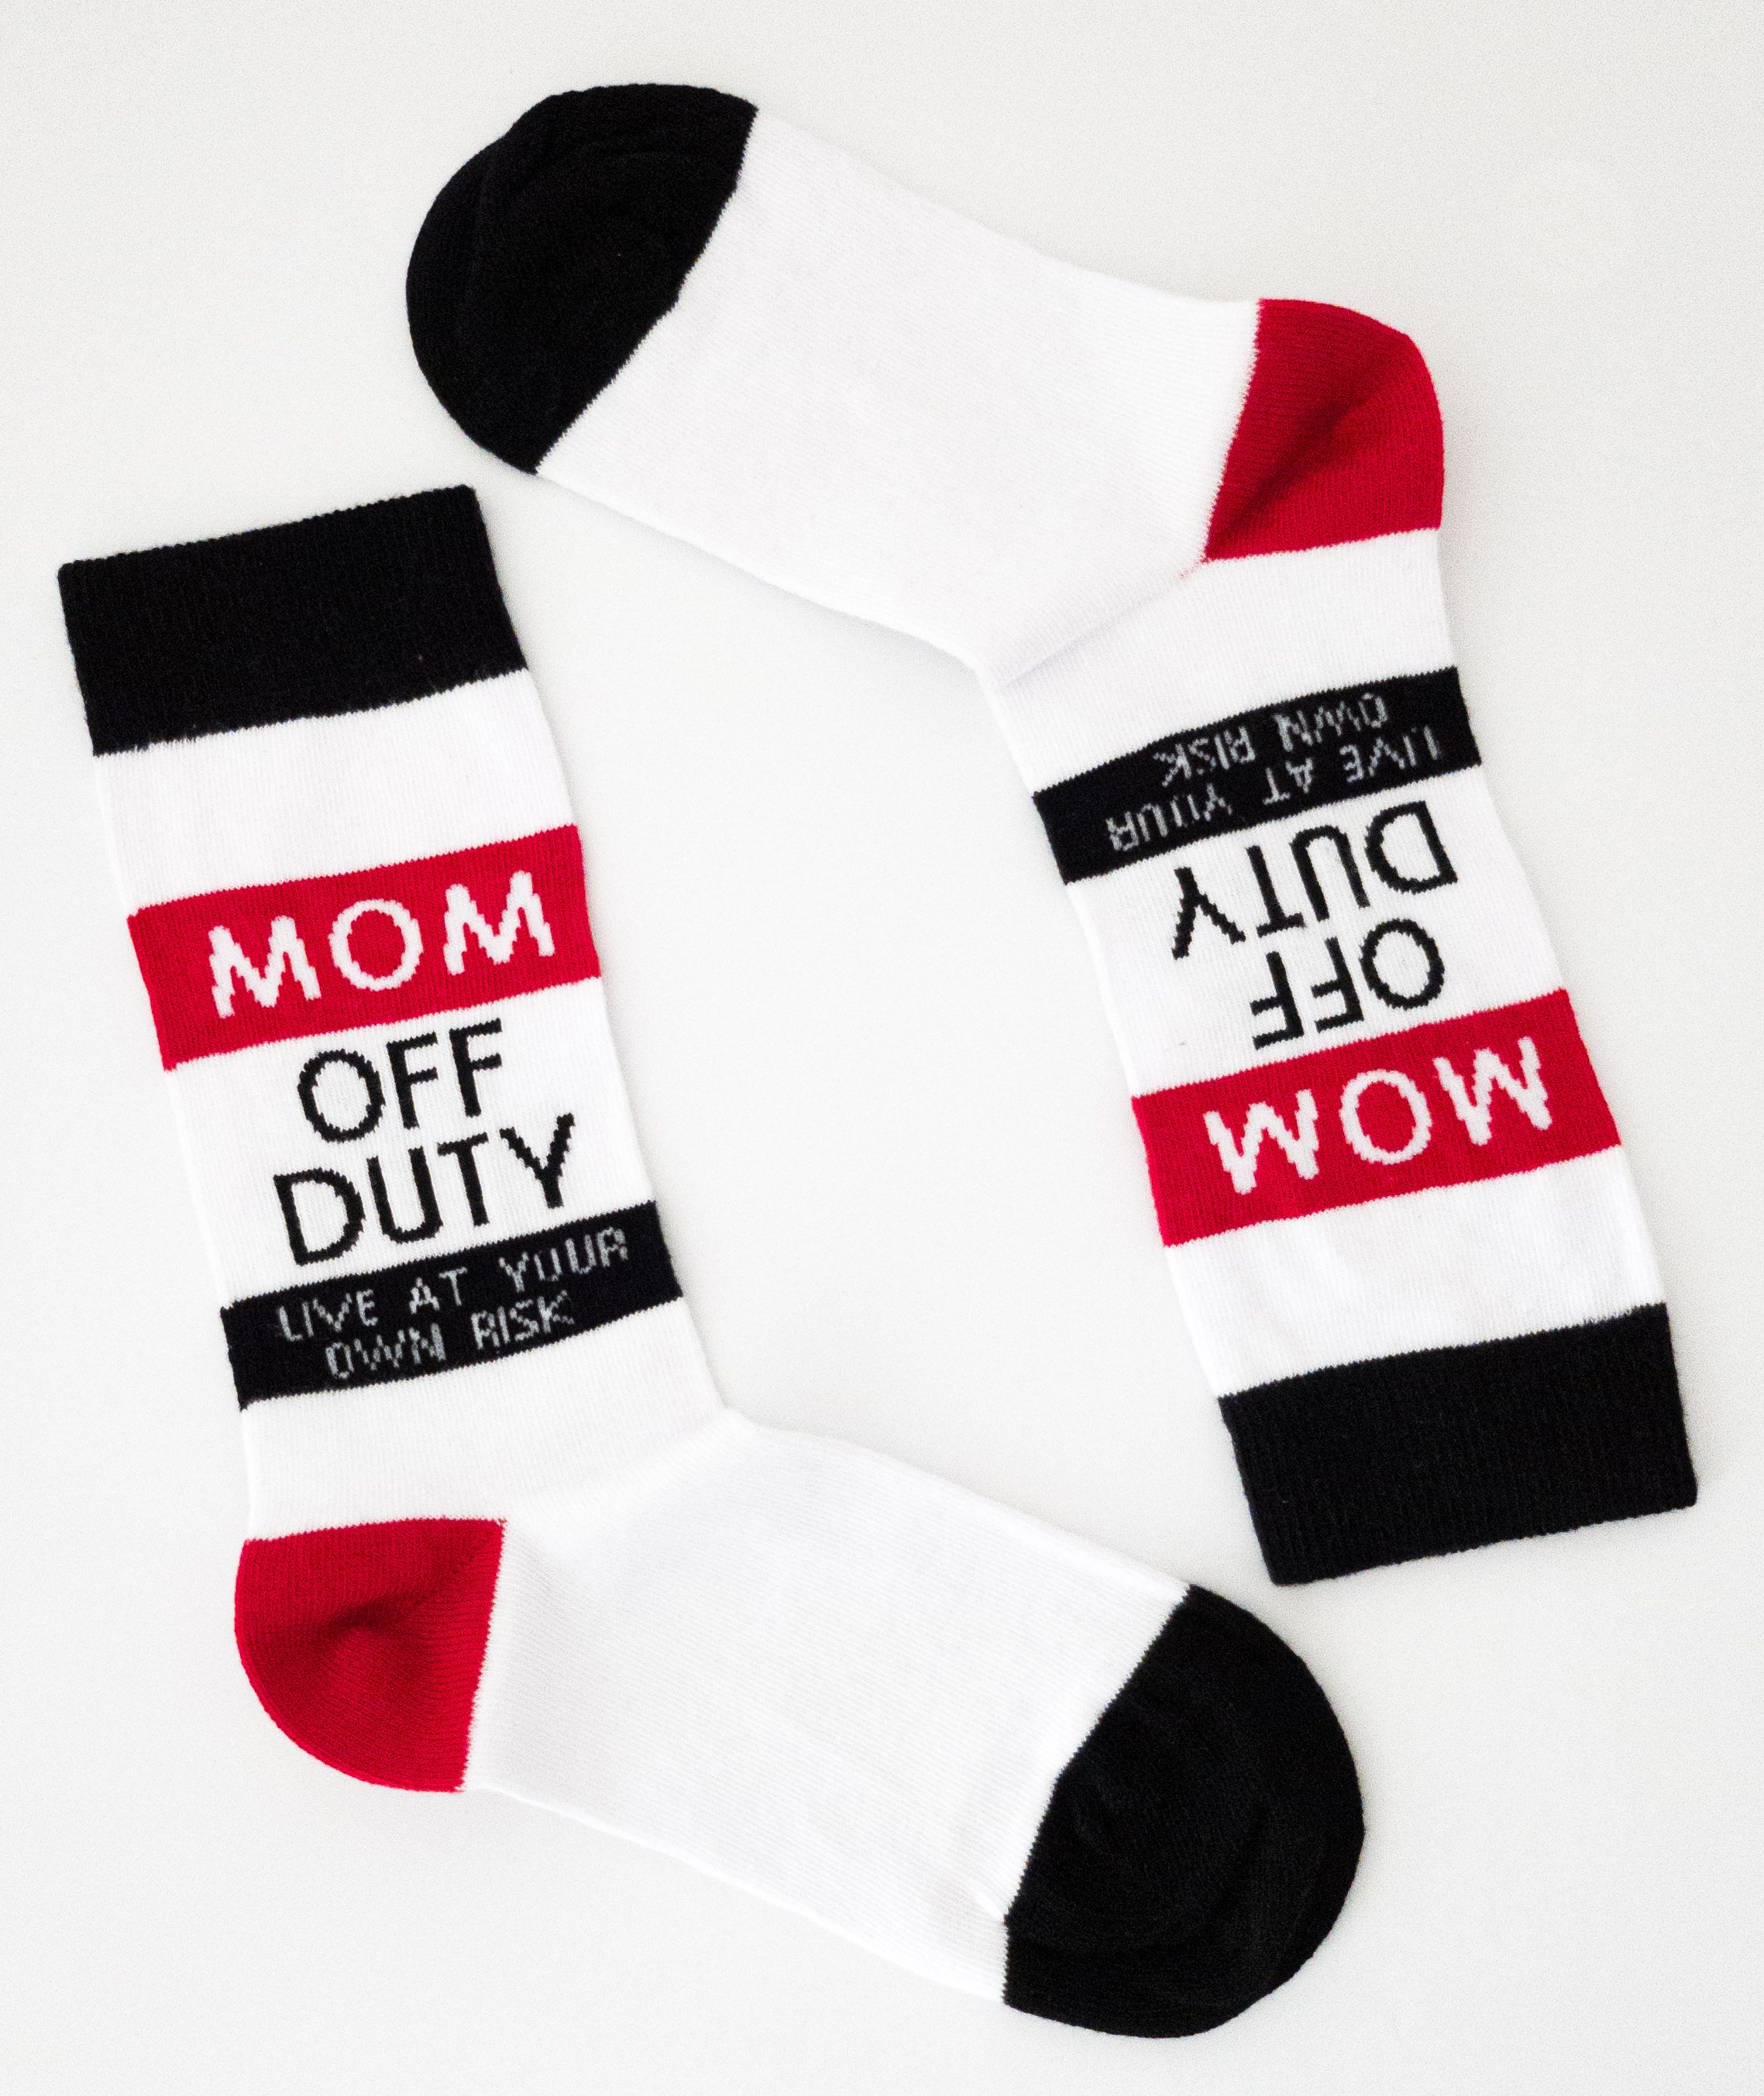 Mom Off Duty Socken